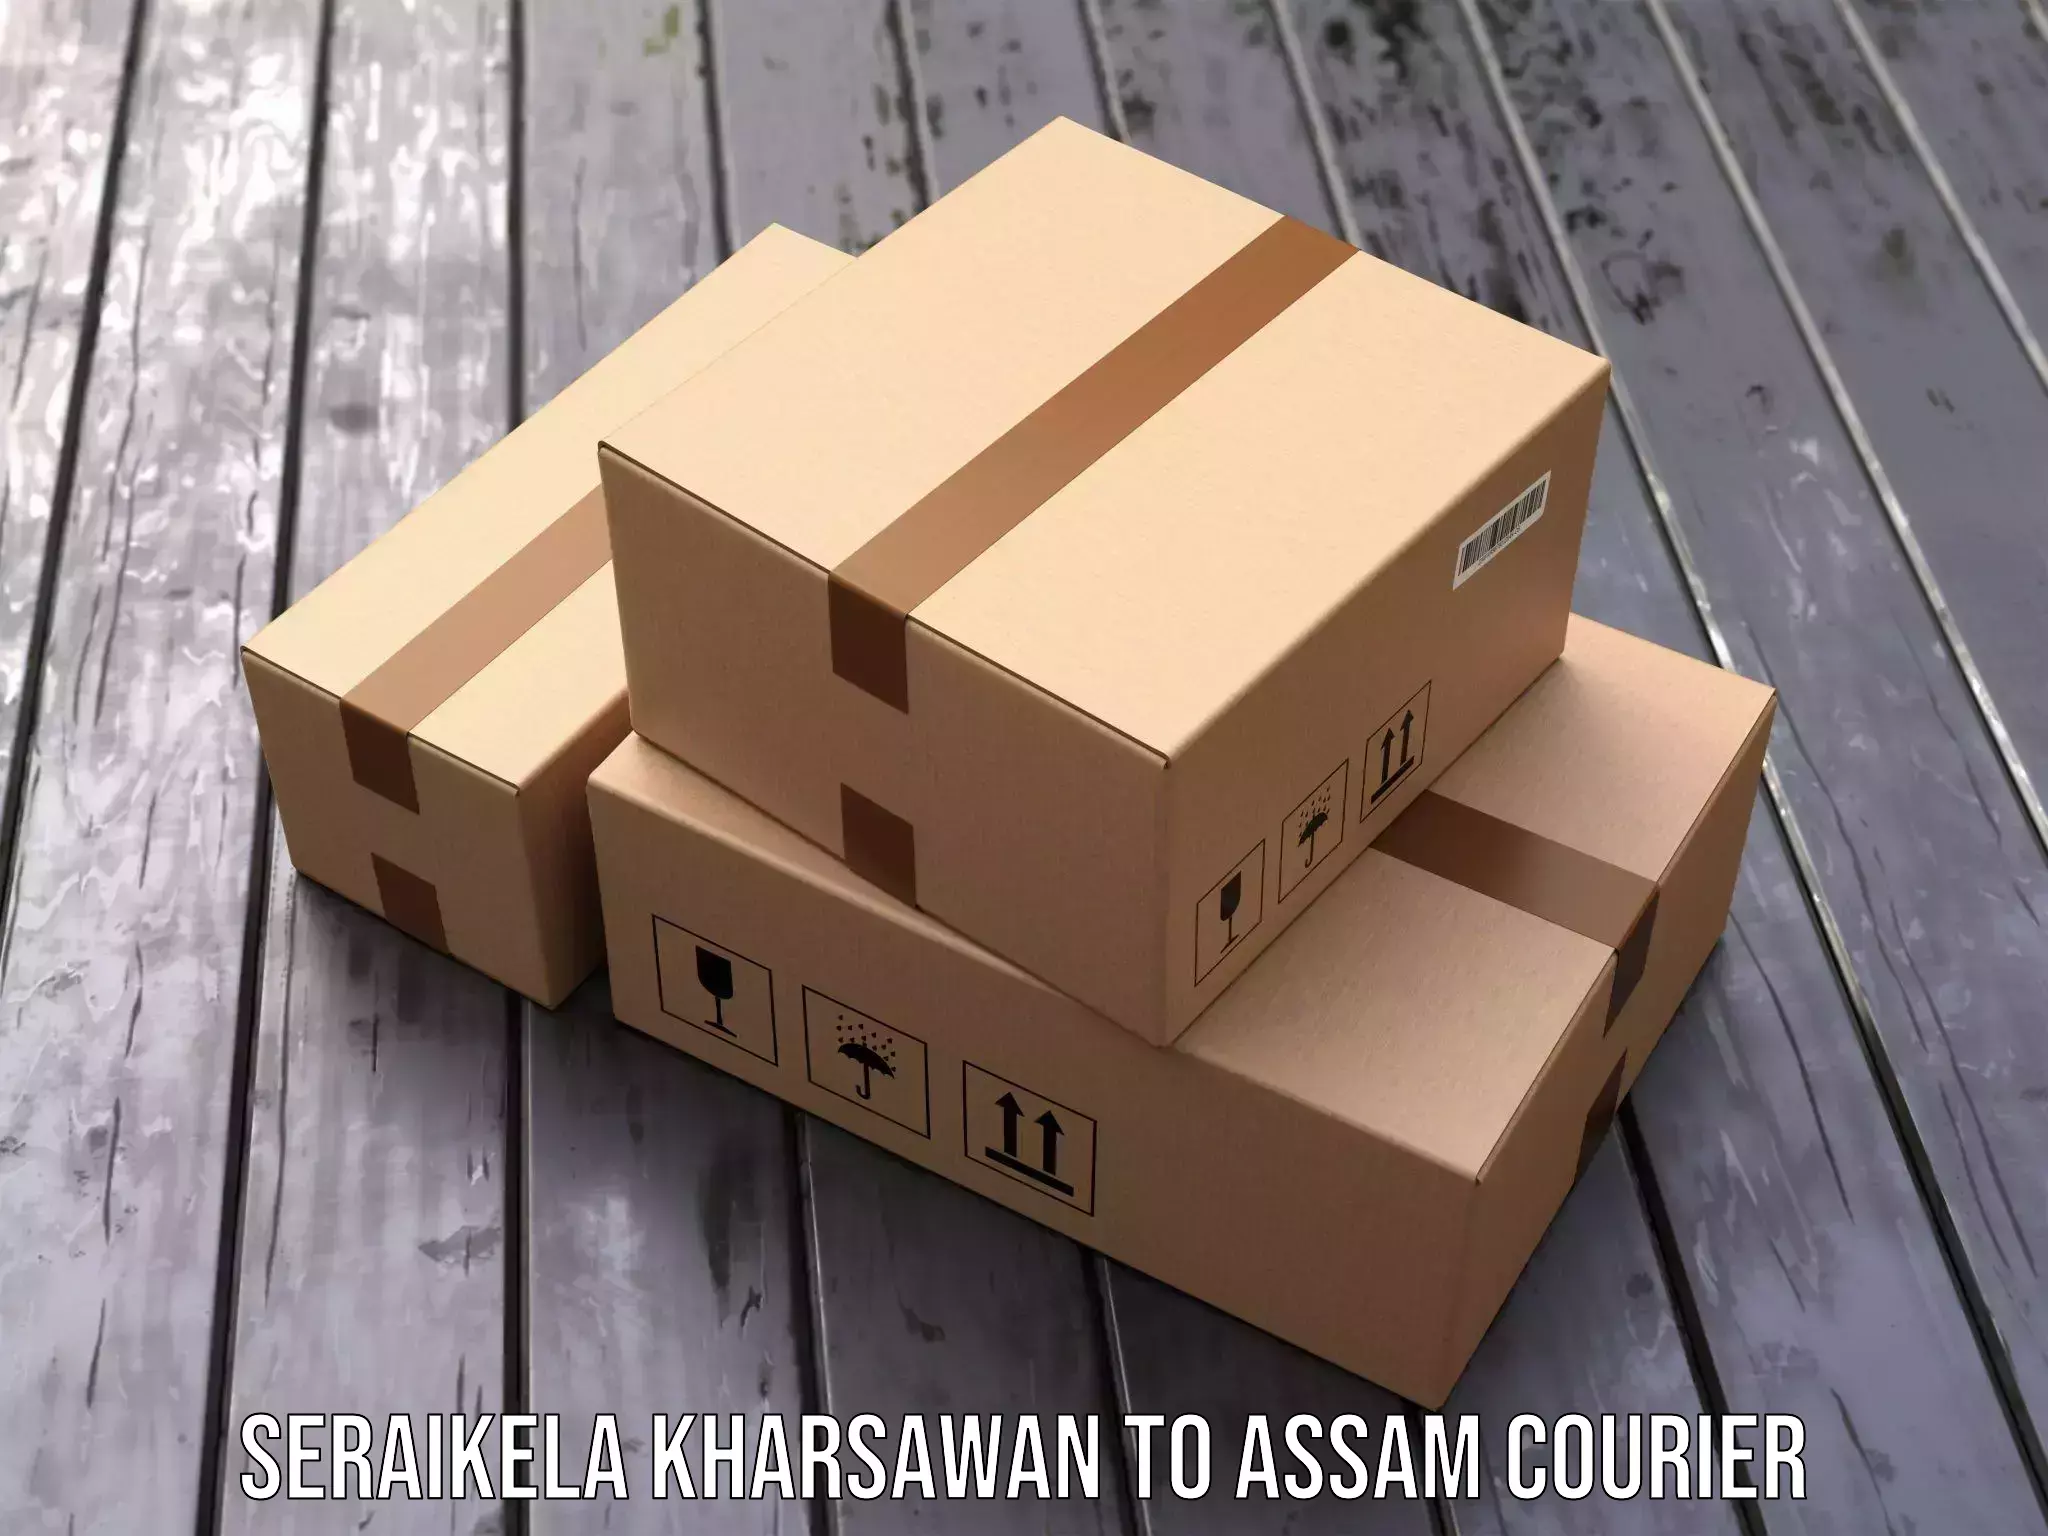 Reliable courier service Seraikela Kharsawan to Assam